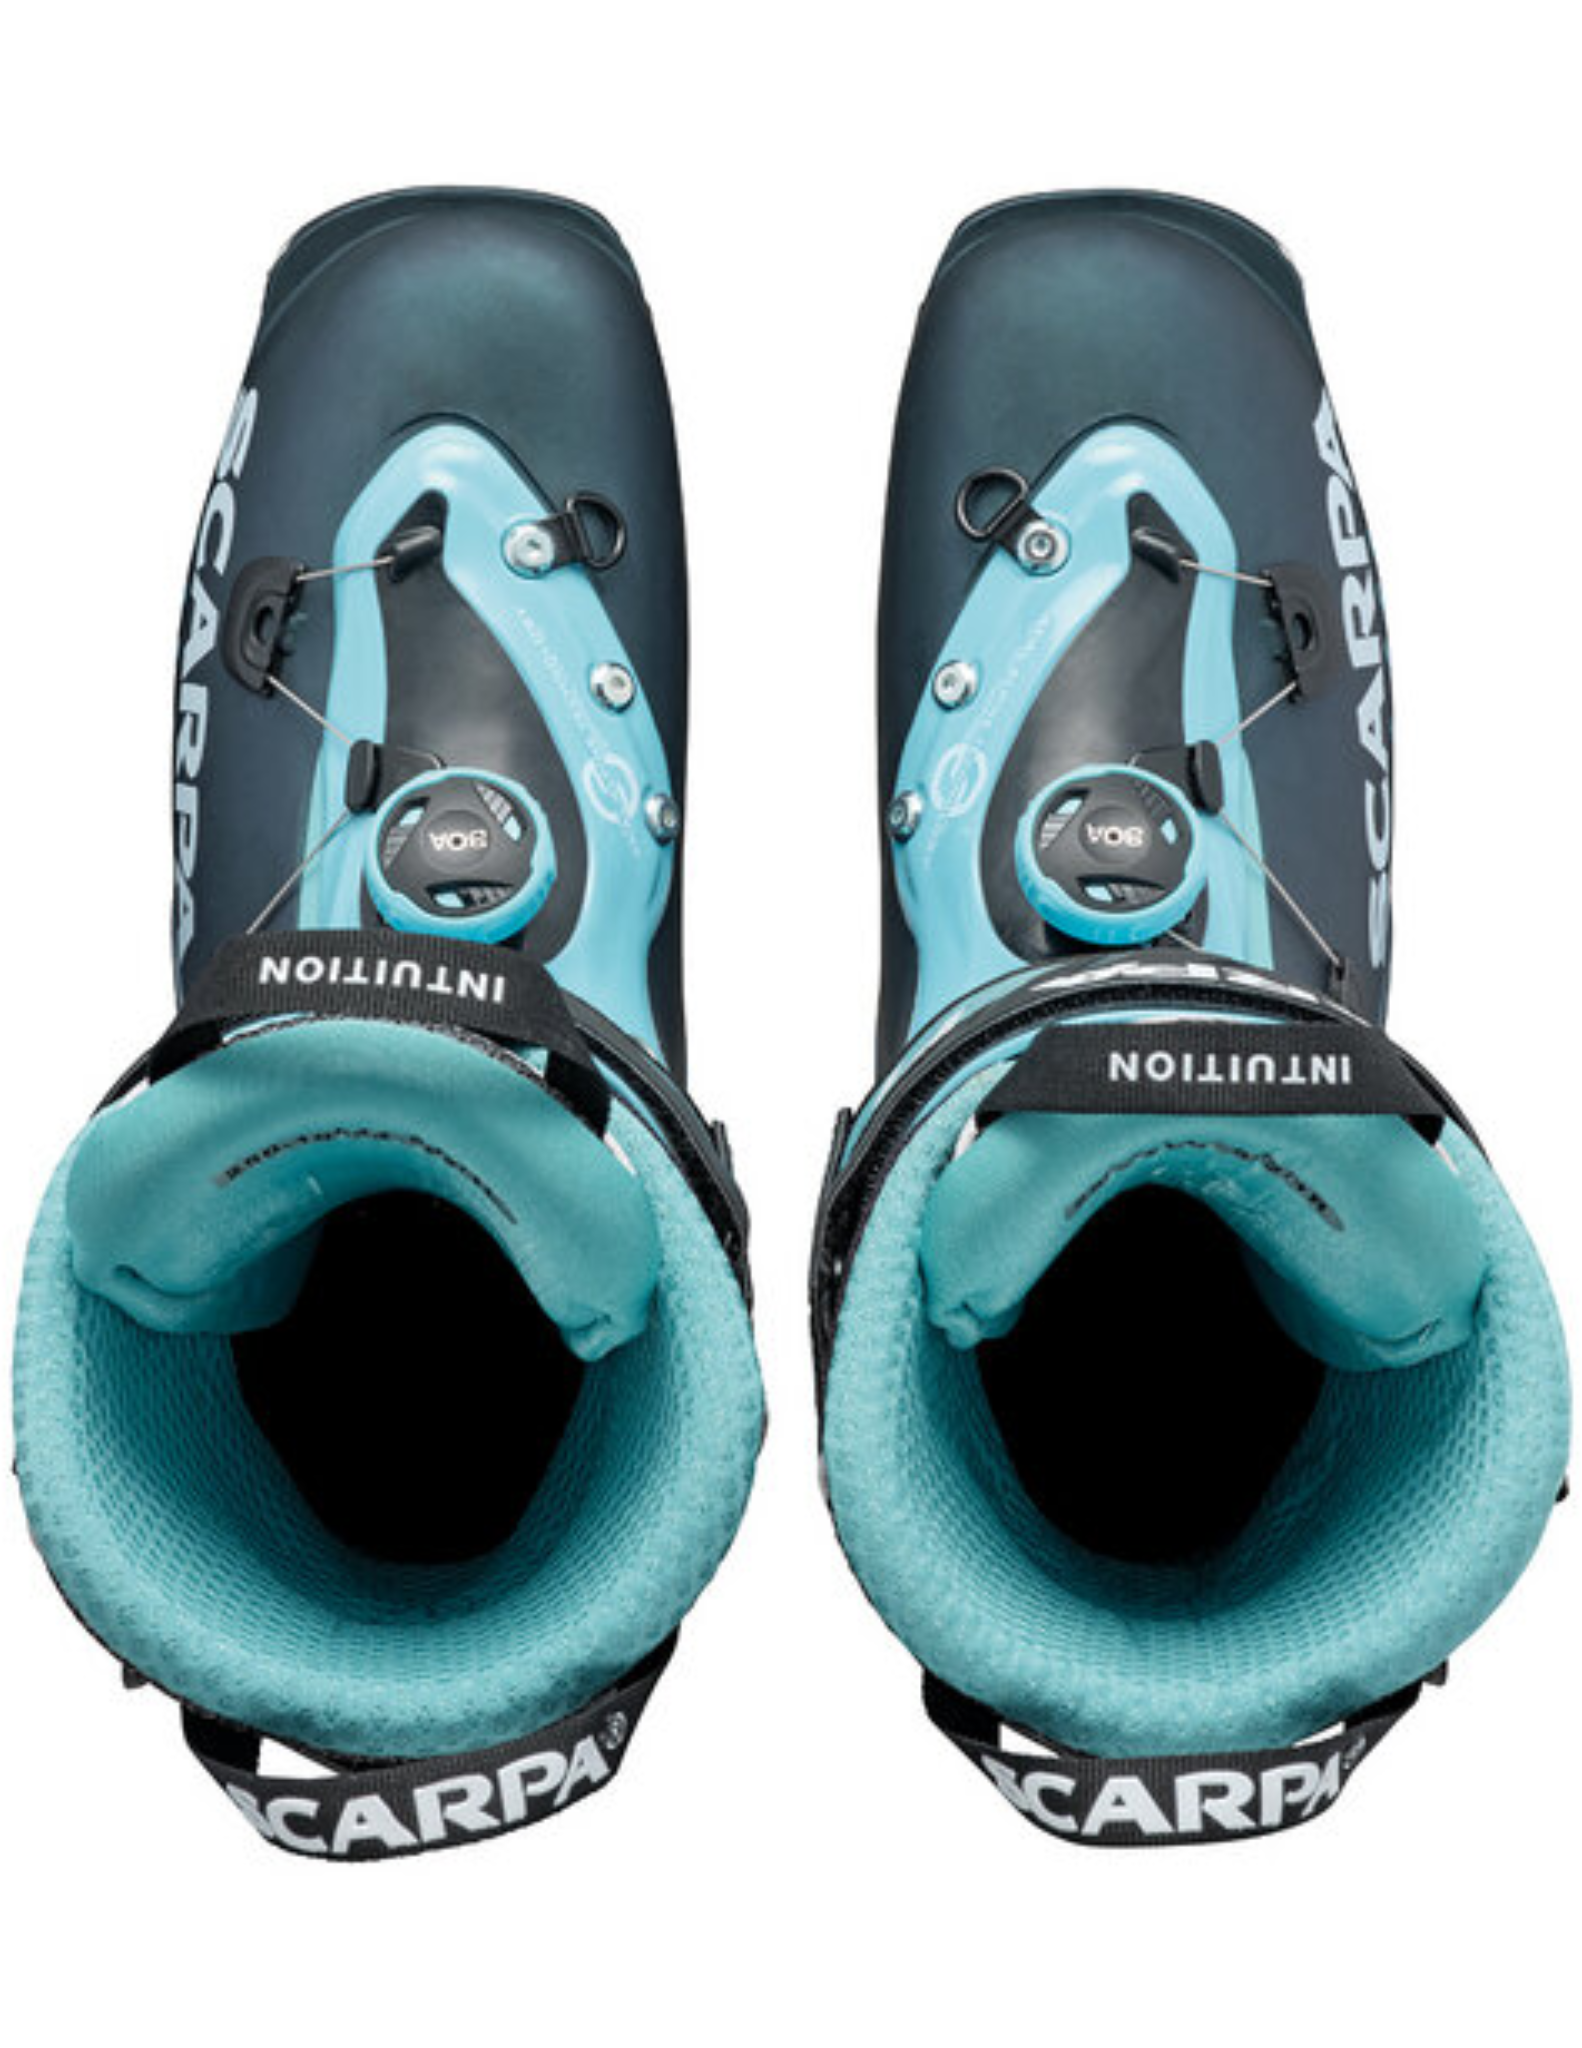 Chaussures de Ski de Rando Scarpa F1 Femme